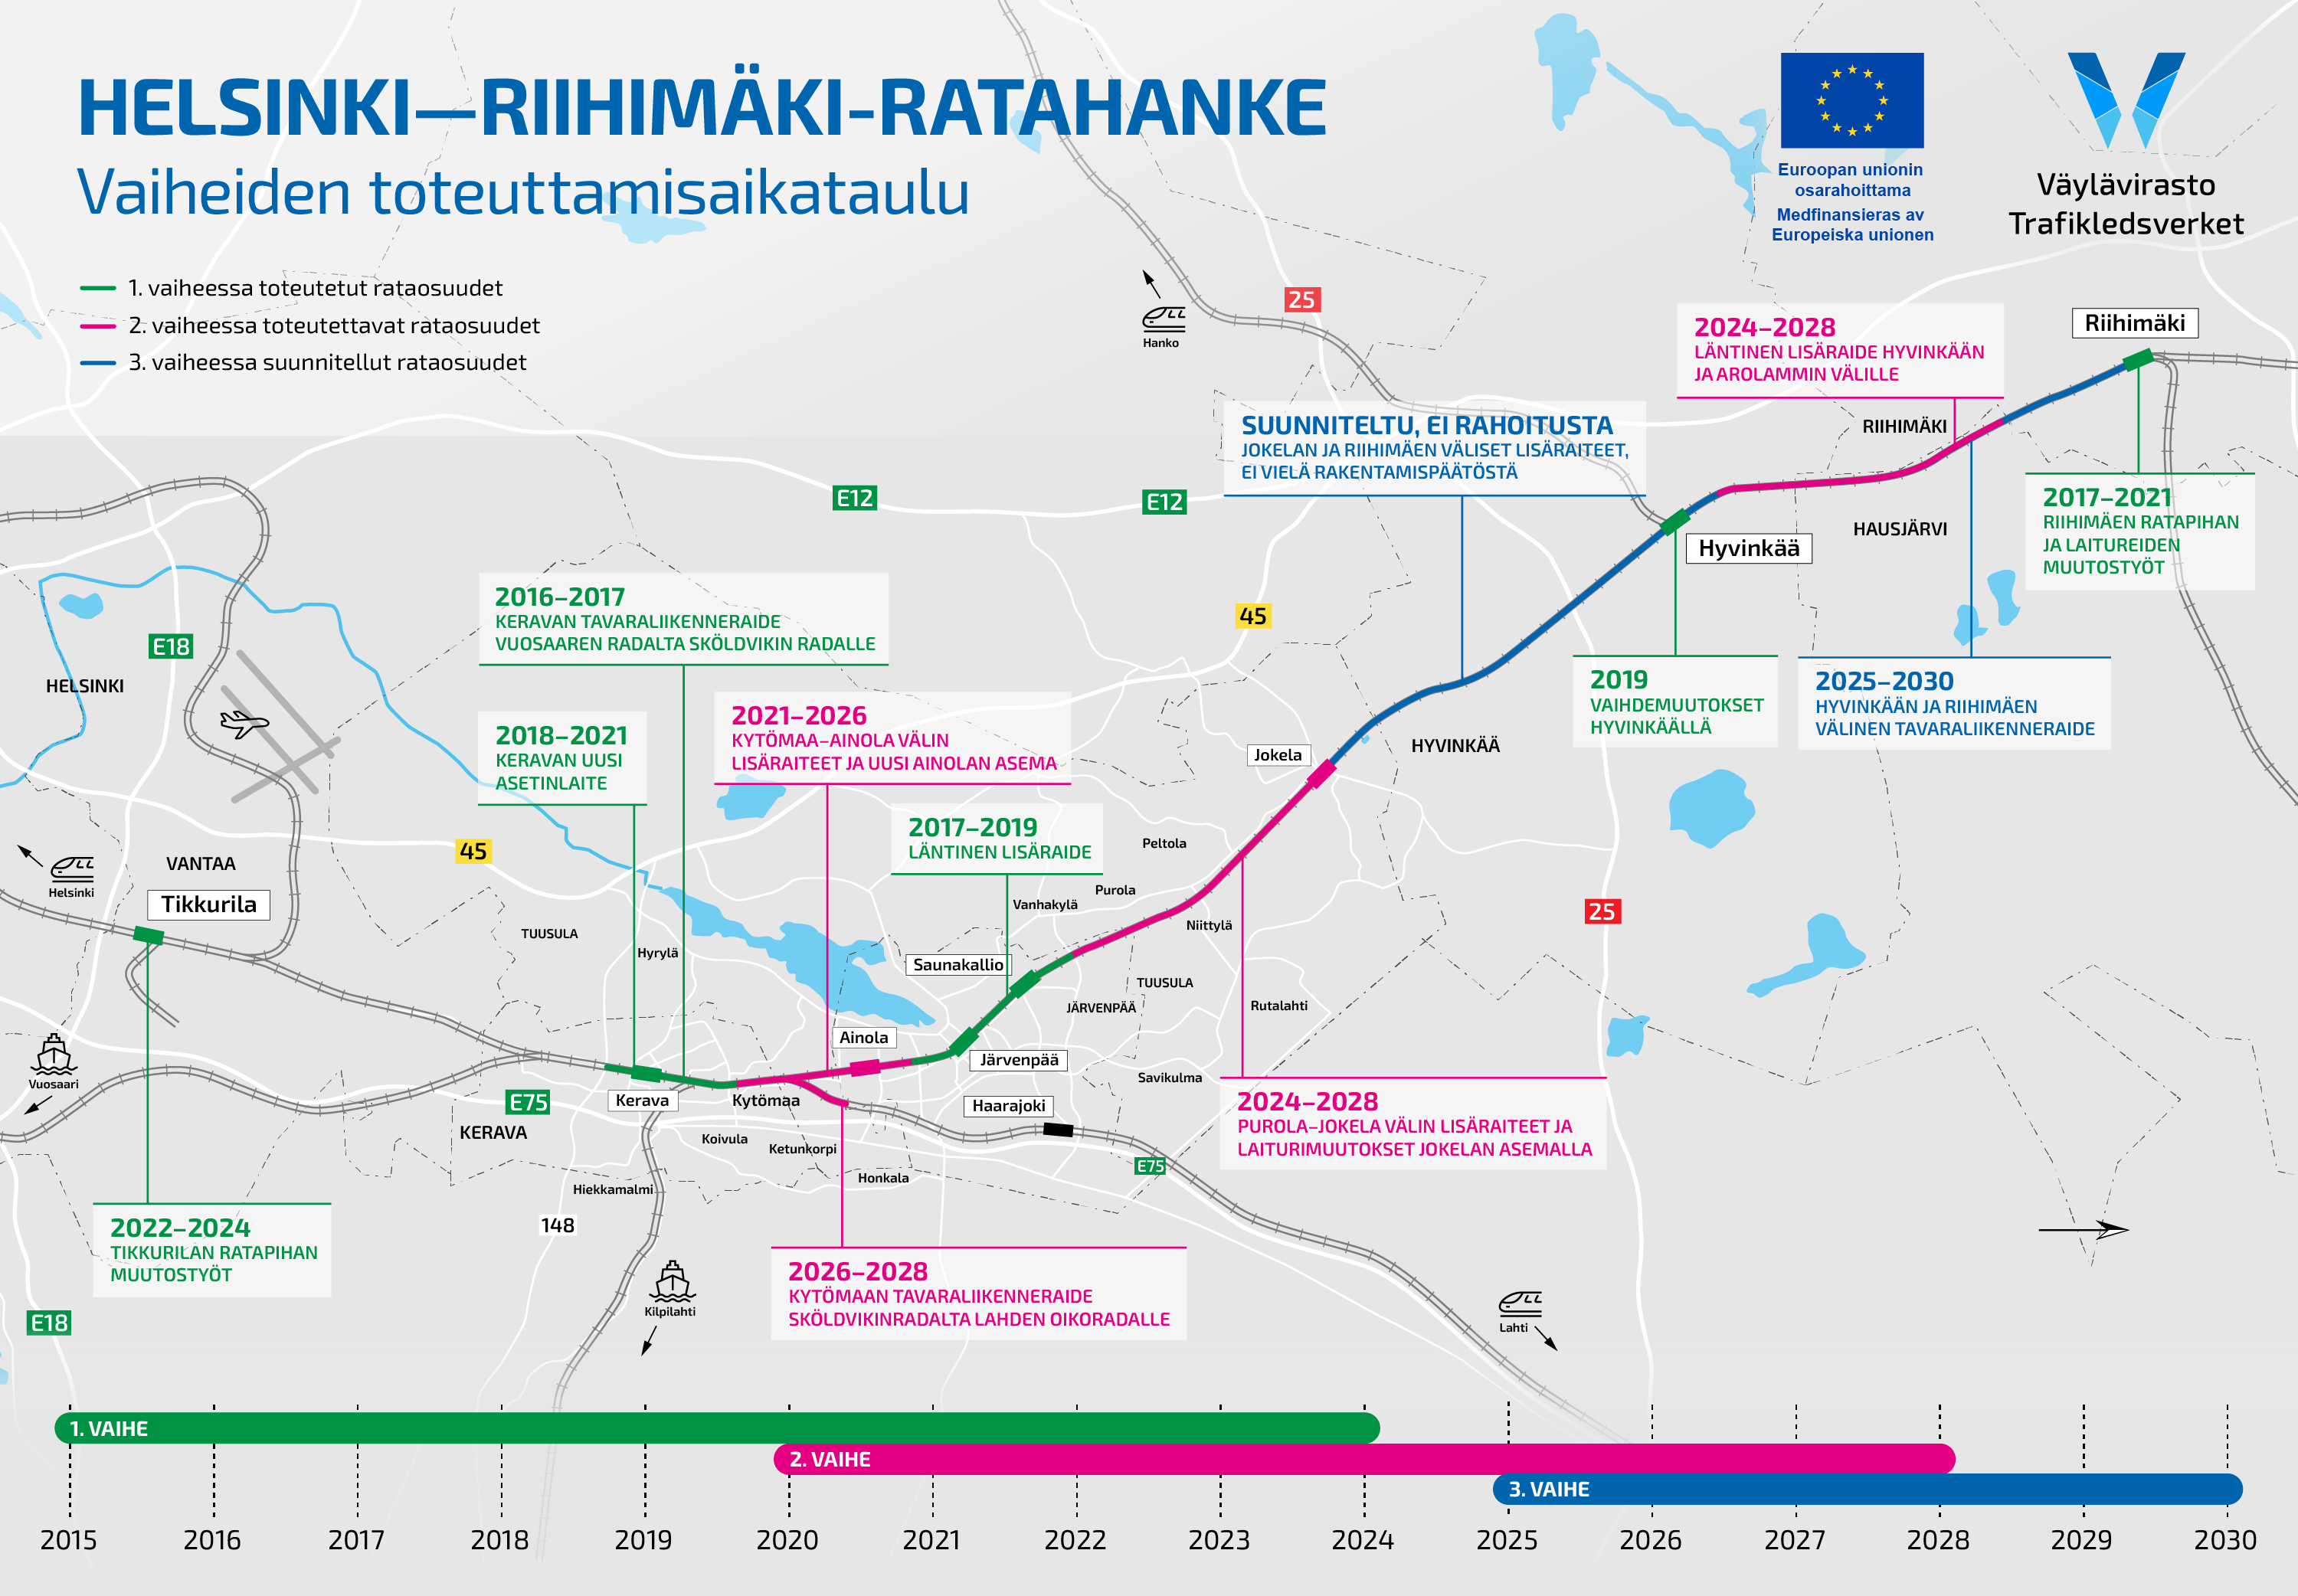 Helsinki–Riihimäki-ratahankkeen eri vaiheiden toteuttamisaikataulu ja vaiheiden osat merkittynä kartalle. 